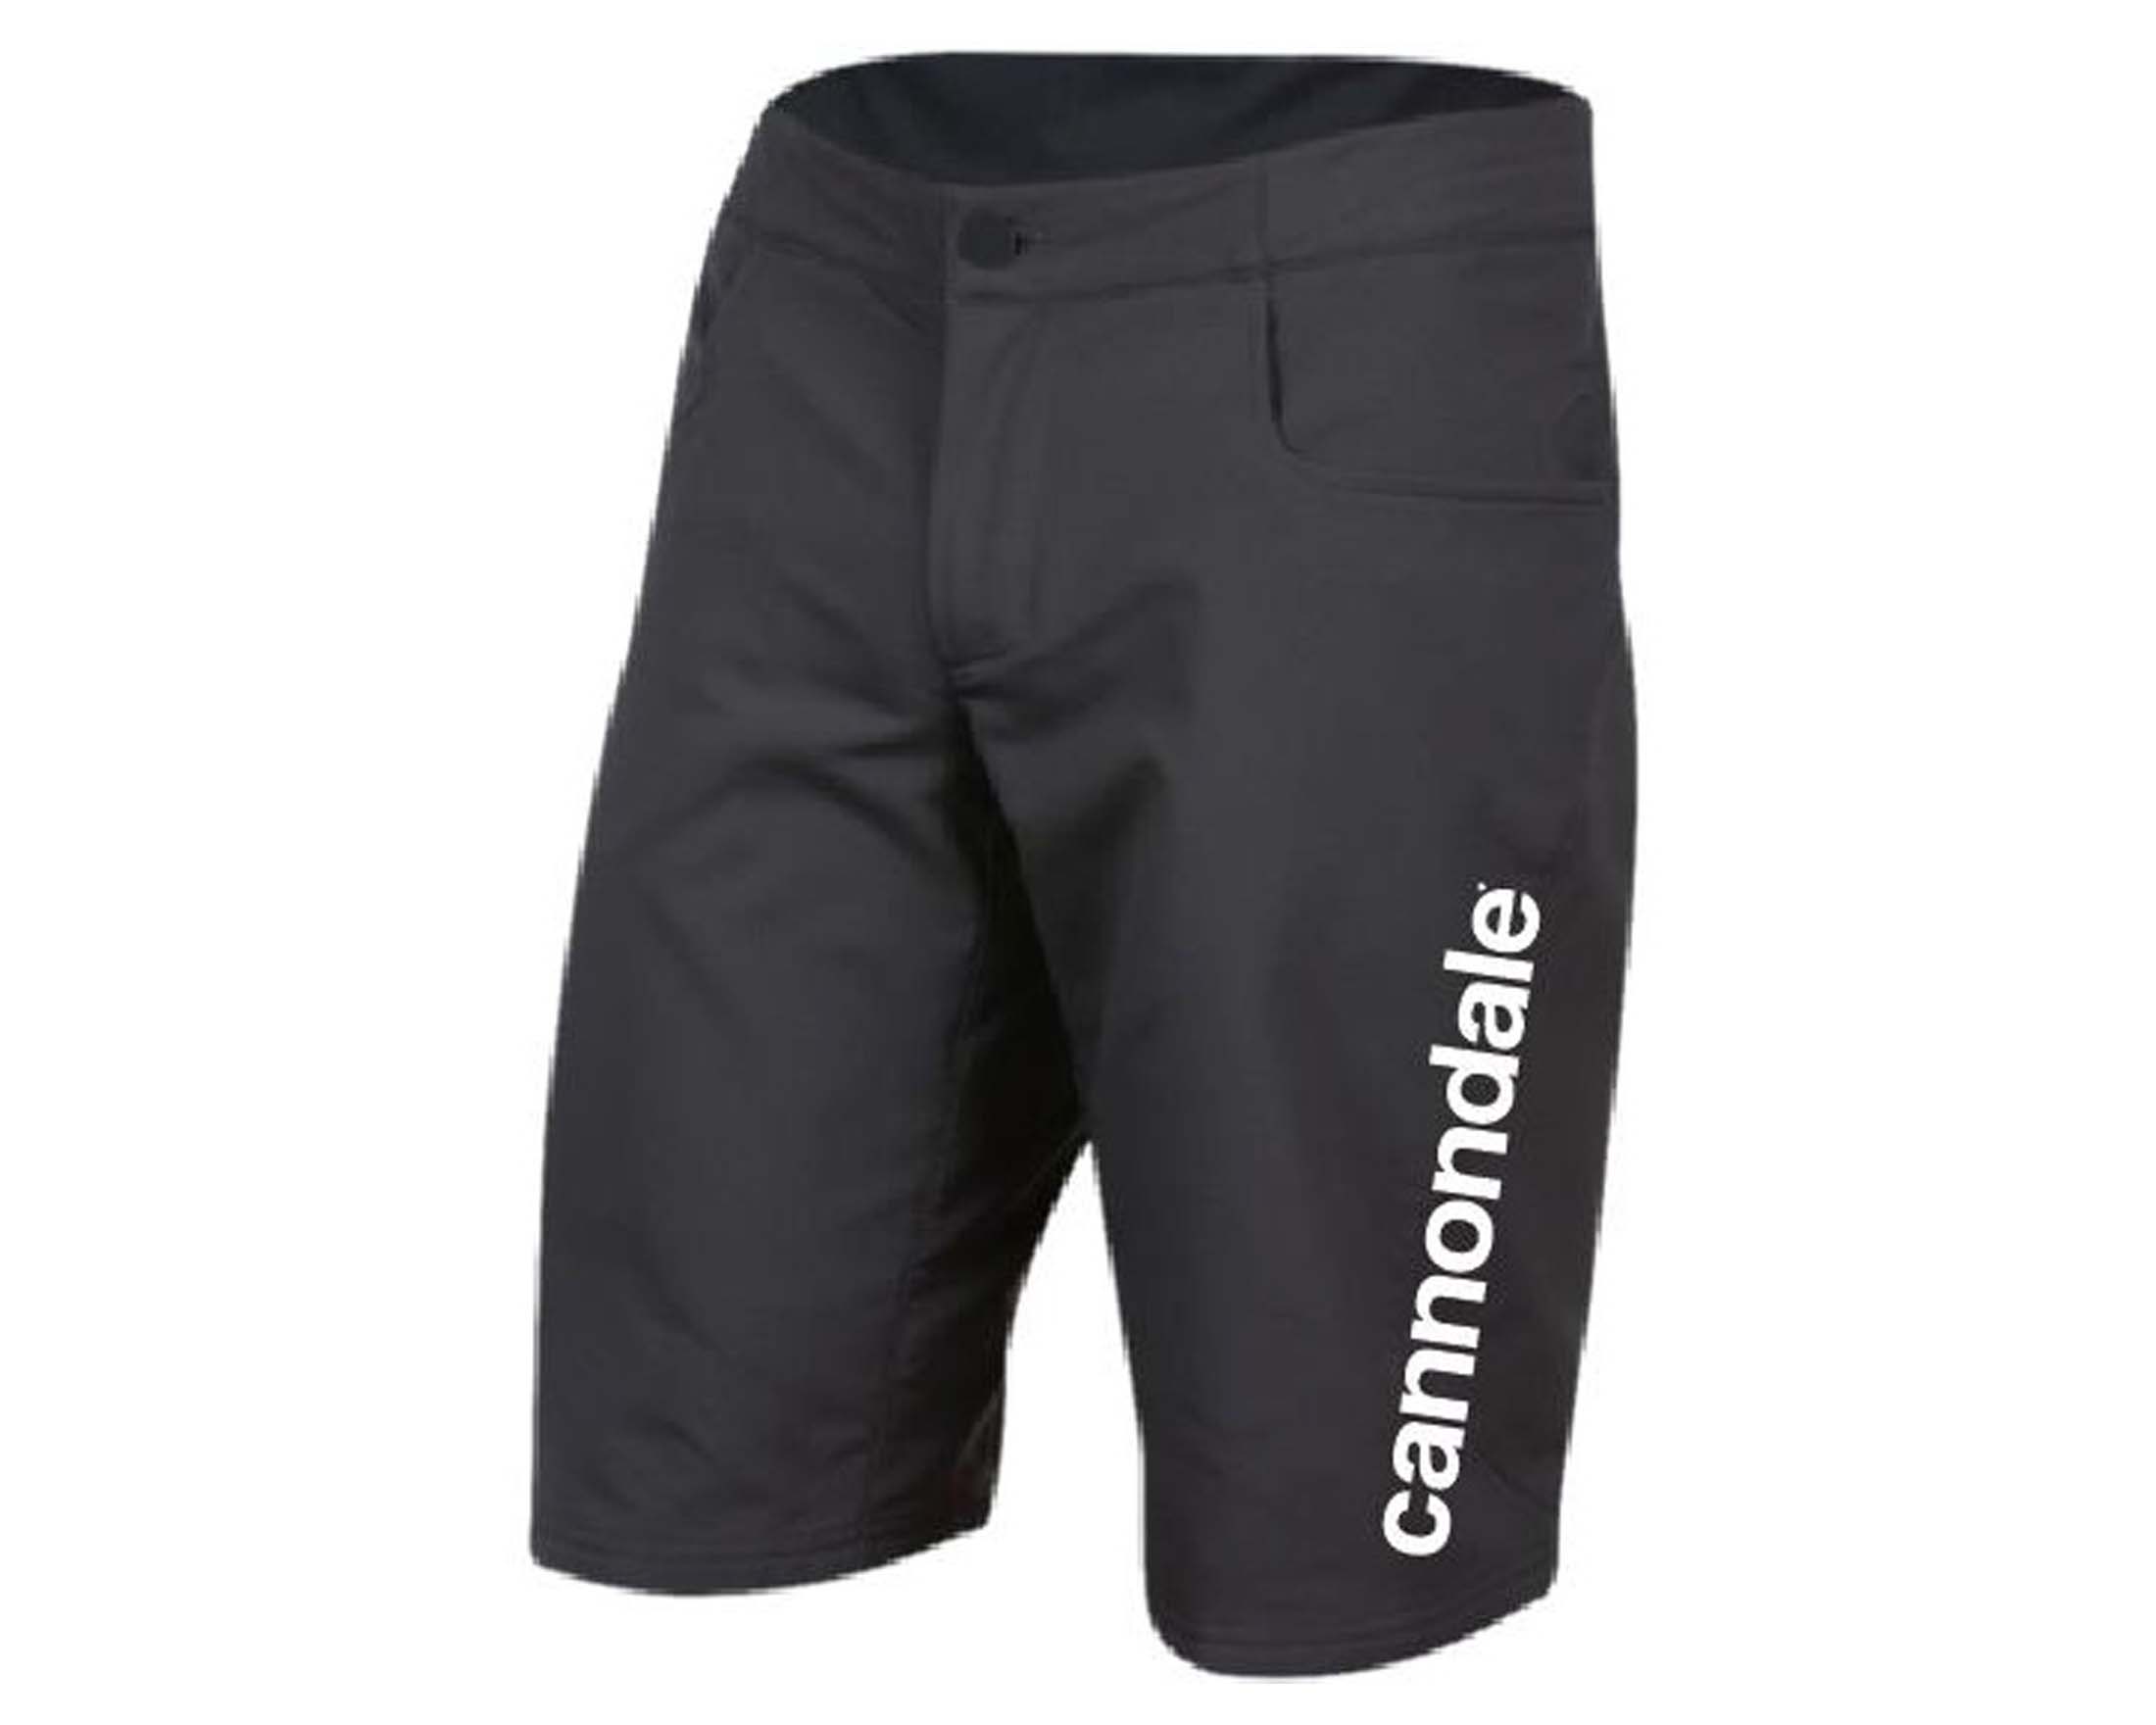 Details about   CANNONDALE CFR Team Replica MTB Short Black CA2201U10 Men’s Clothing Pants 